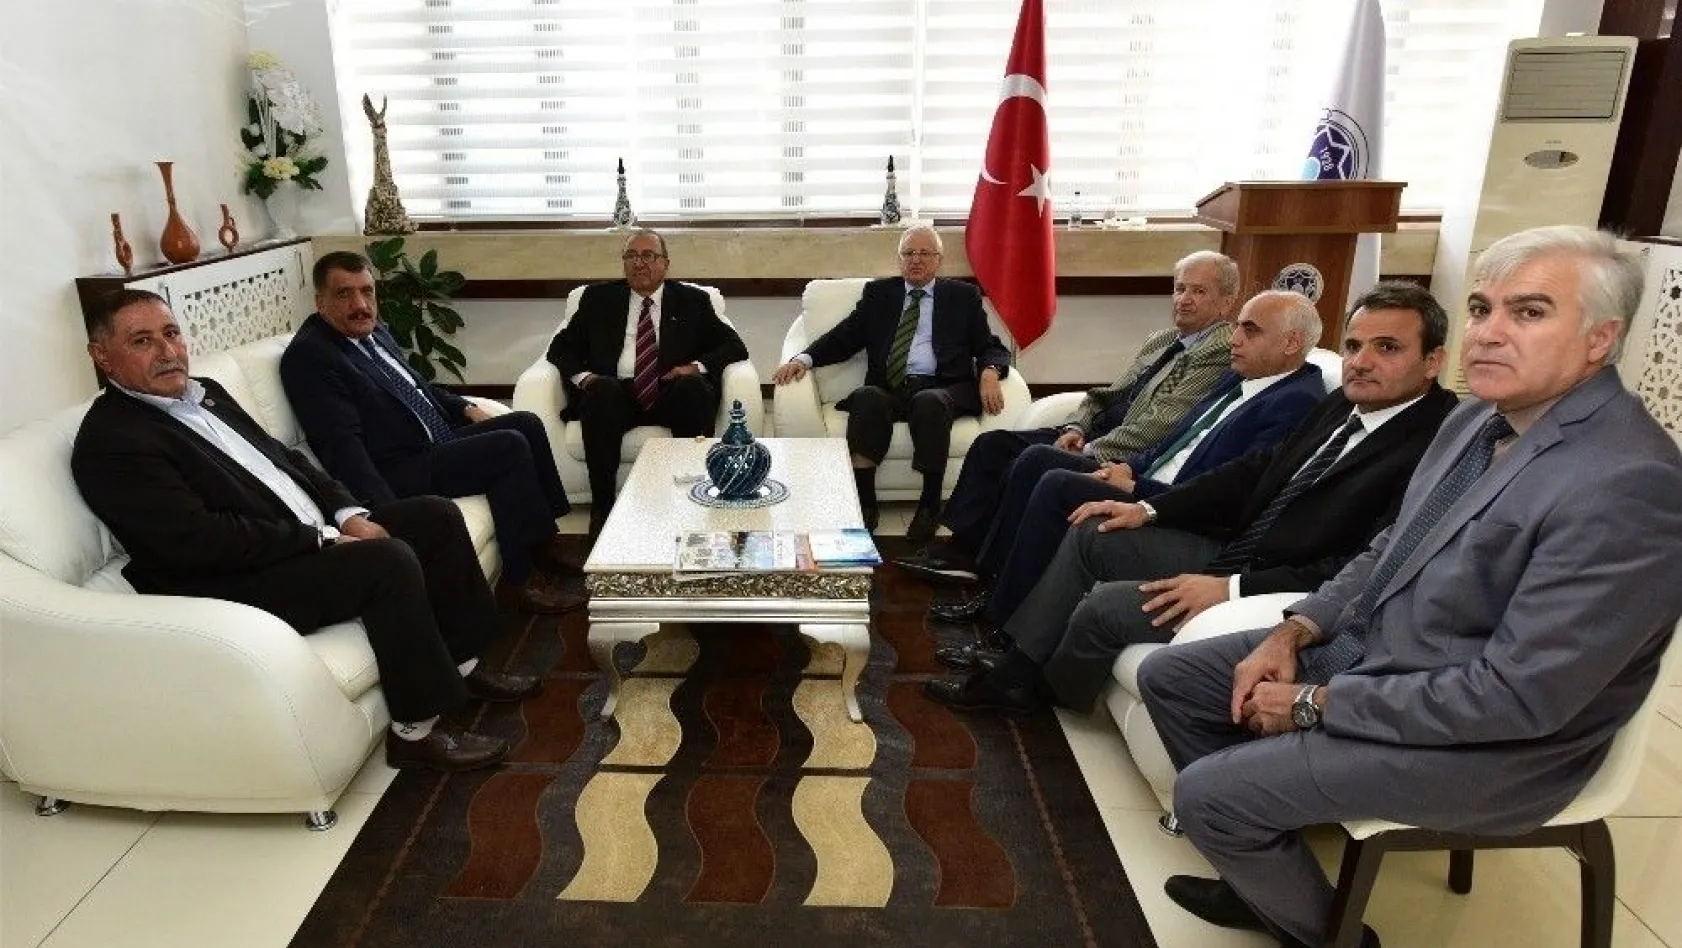 Eski bakan Emiroğlu, Gürkan ile tecrübelerini paylaştı
